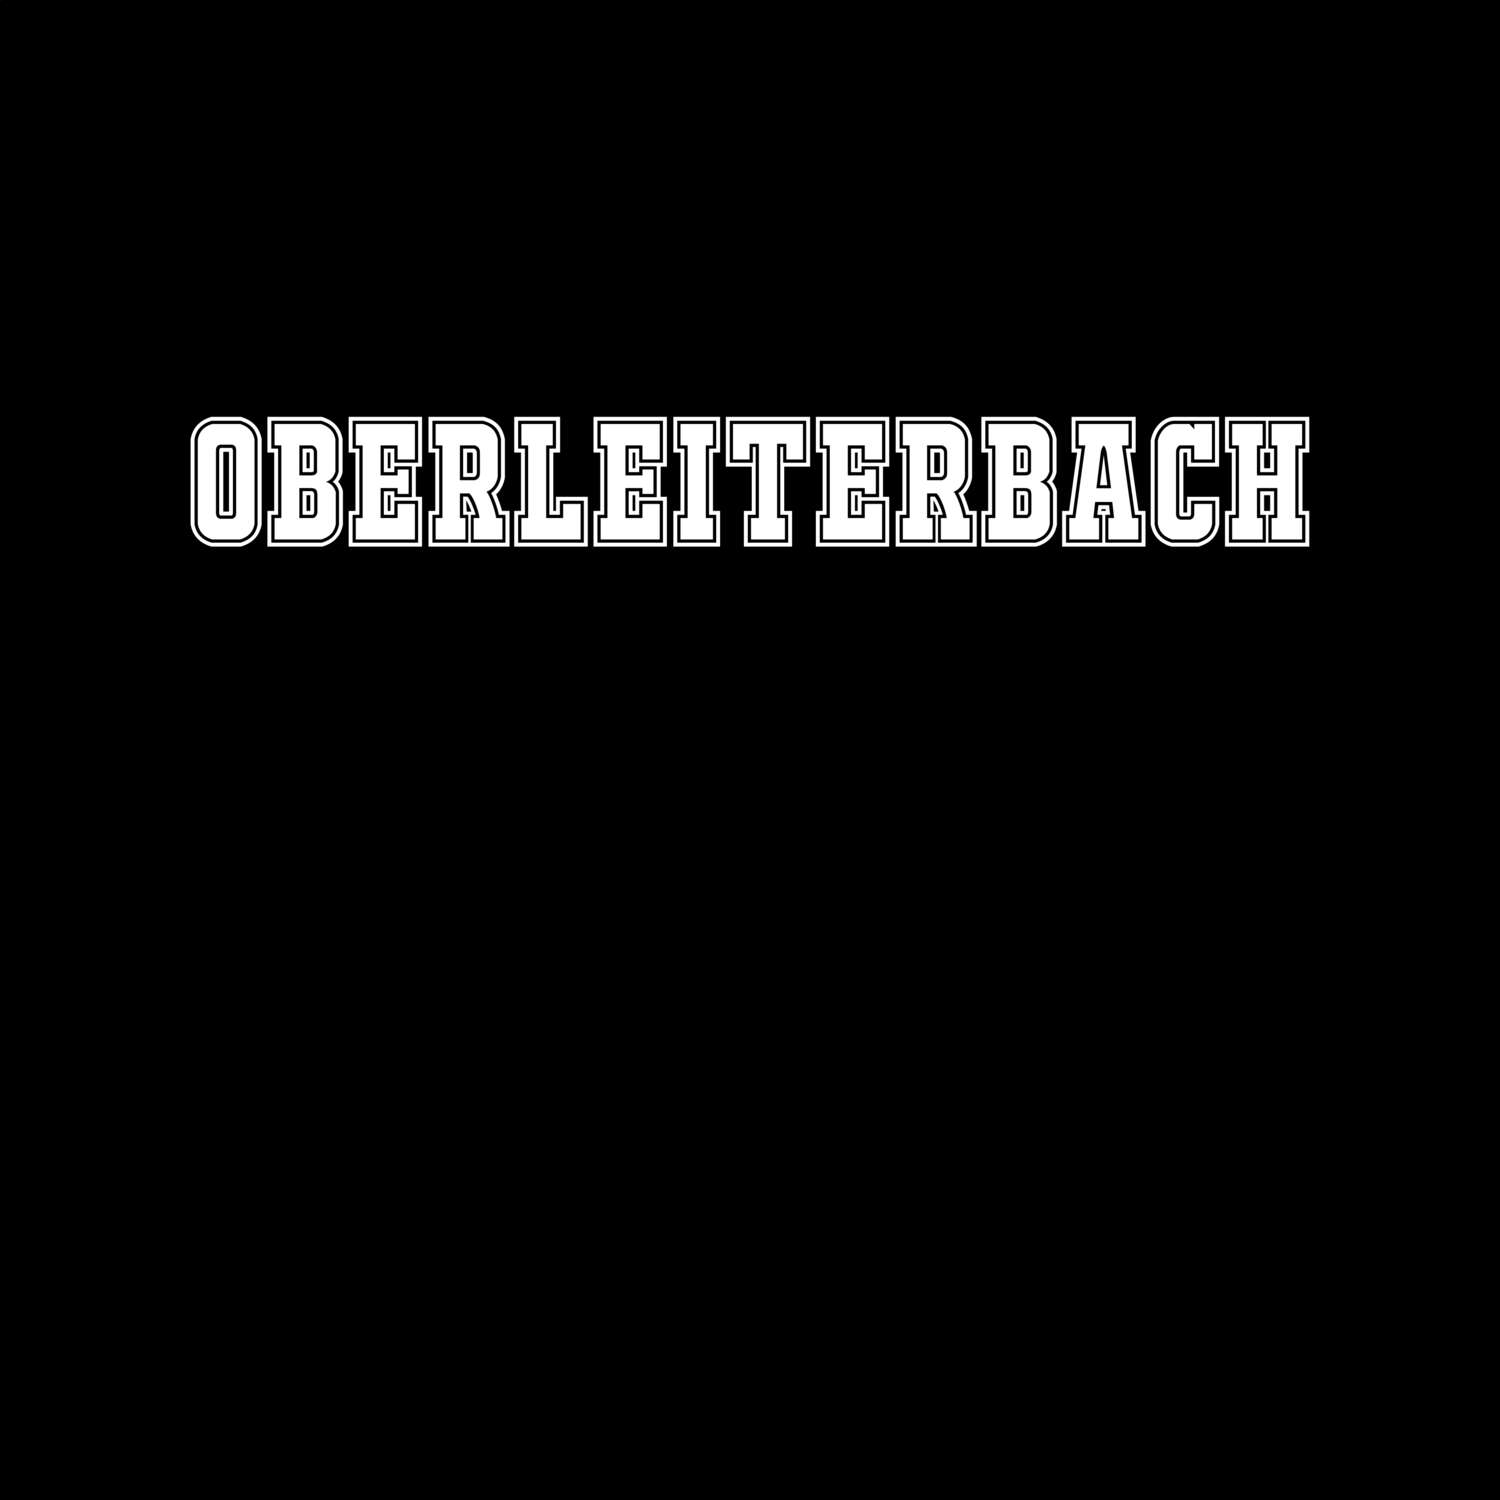 Oberleiterbach T-Shirt »Classic«